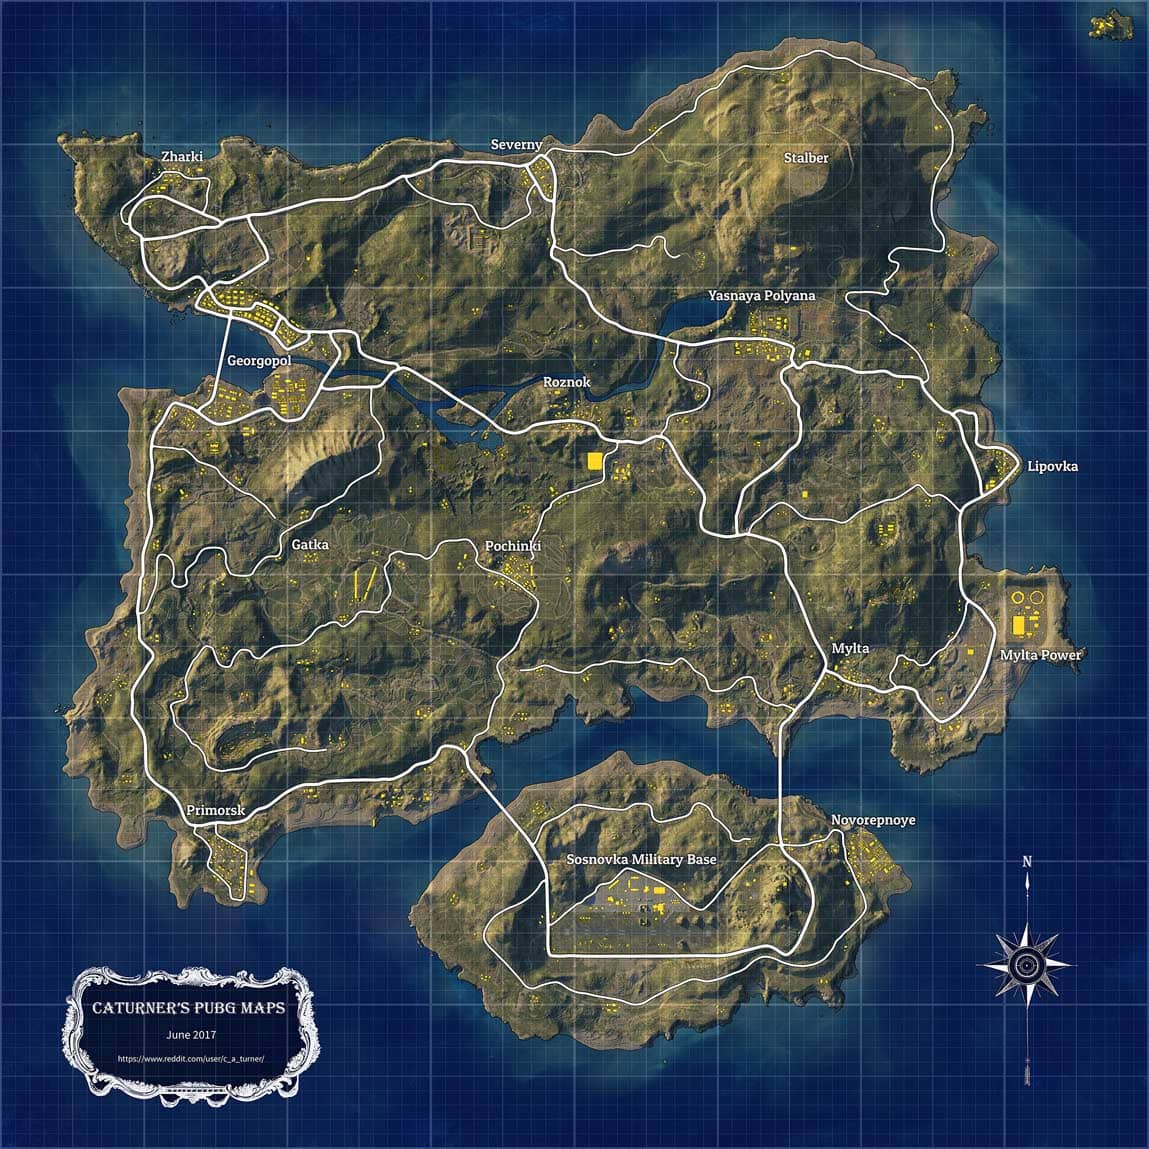 خريطة Erangel في لعبة PUBG ببجي